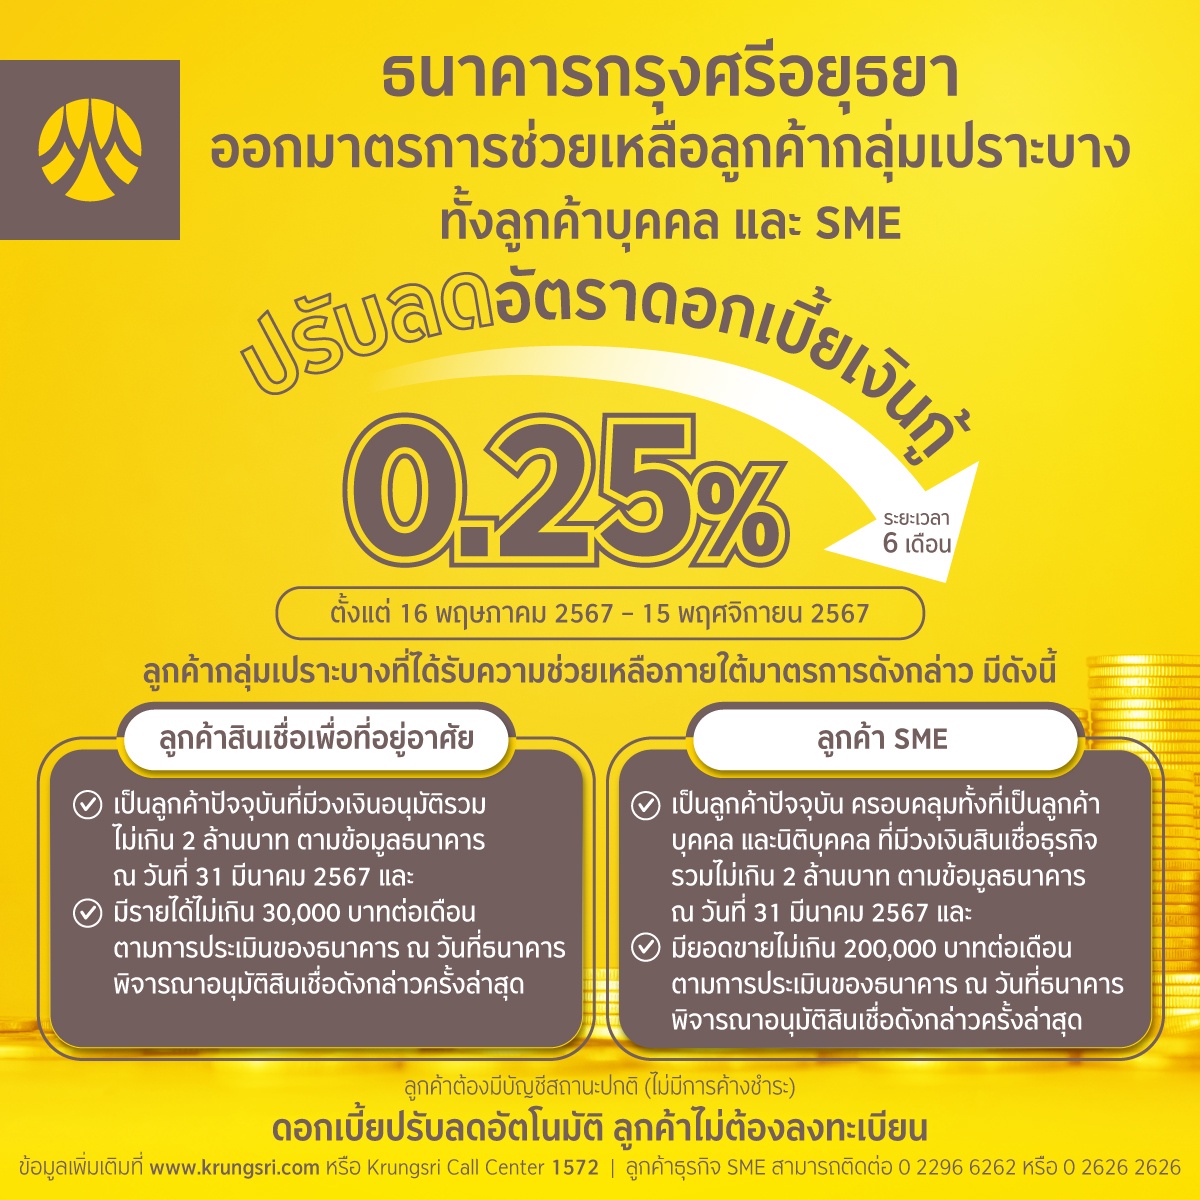 กรุงศรีออกมาตรการช่วยเหลือ ลดดอกเบี้ยเงินกู้ 0.25% ให้ลูกค้ากลุ่มเปราะบาง เป็นเวลา 6 เดือน ตอบรับแนวทางการช่วยเหลือของสมาคมธนาคารไทย